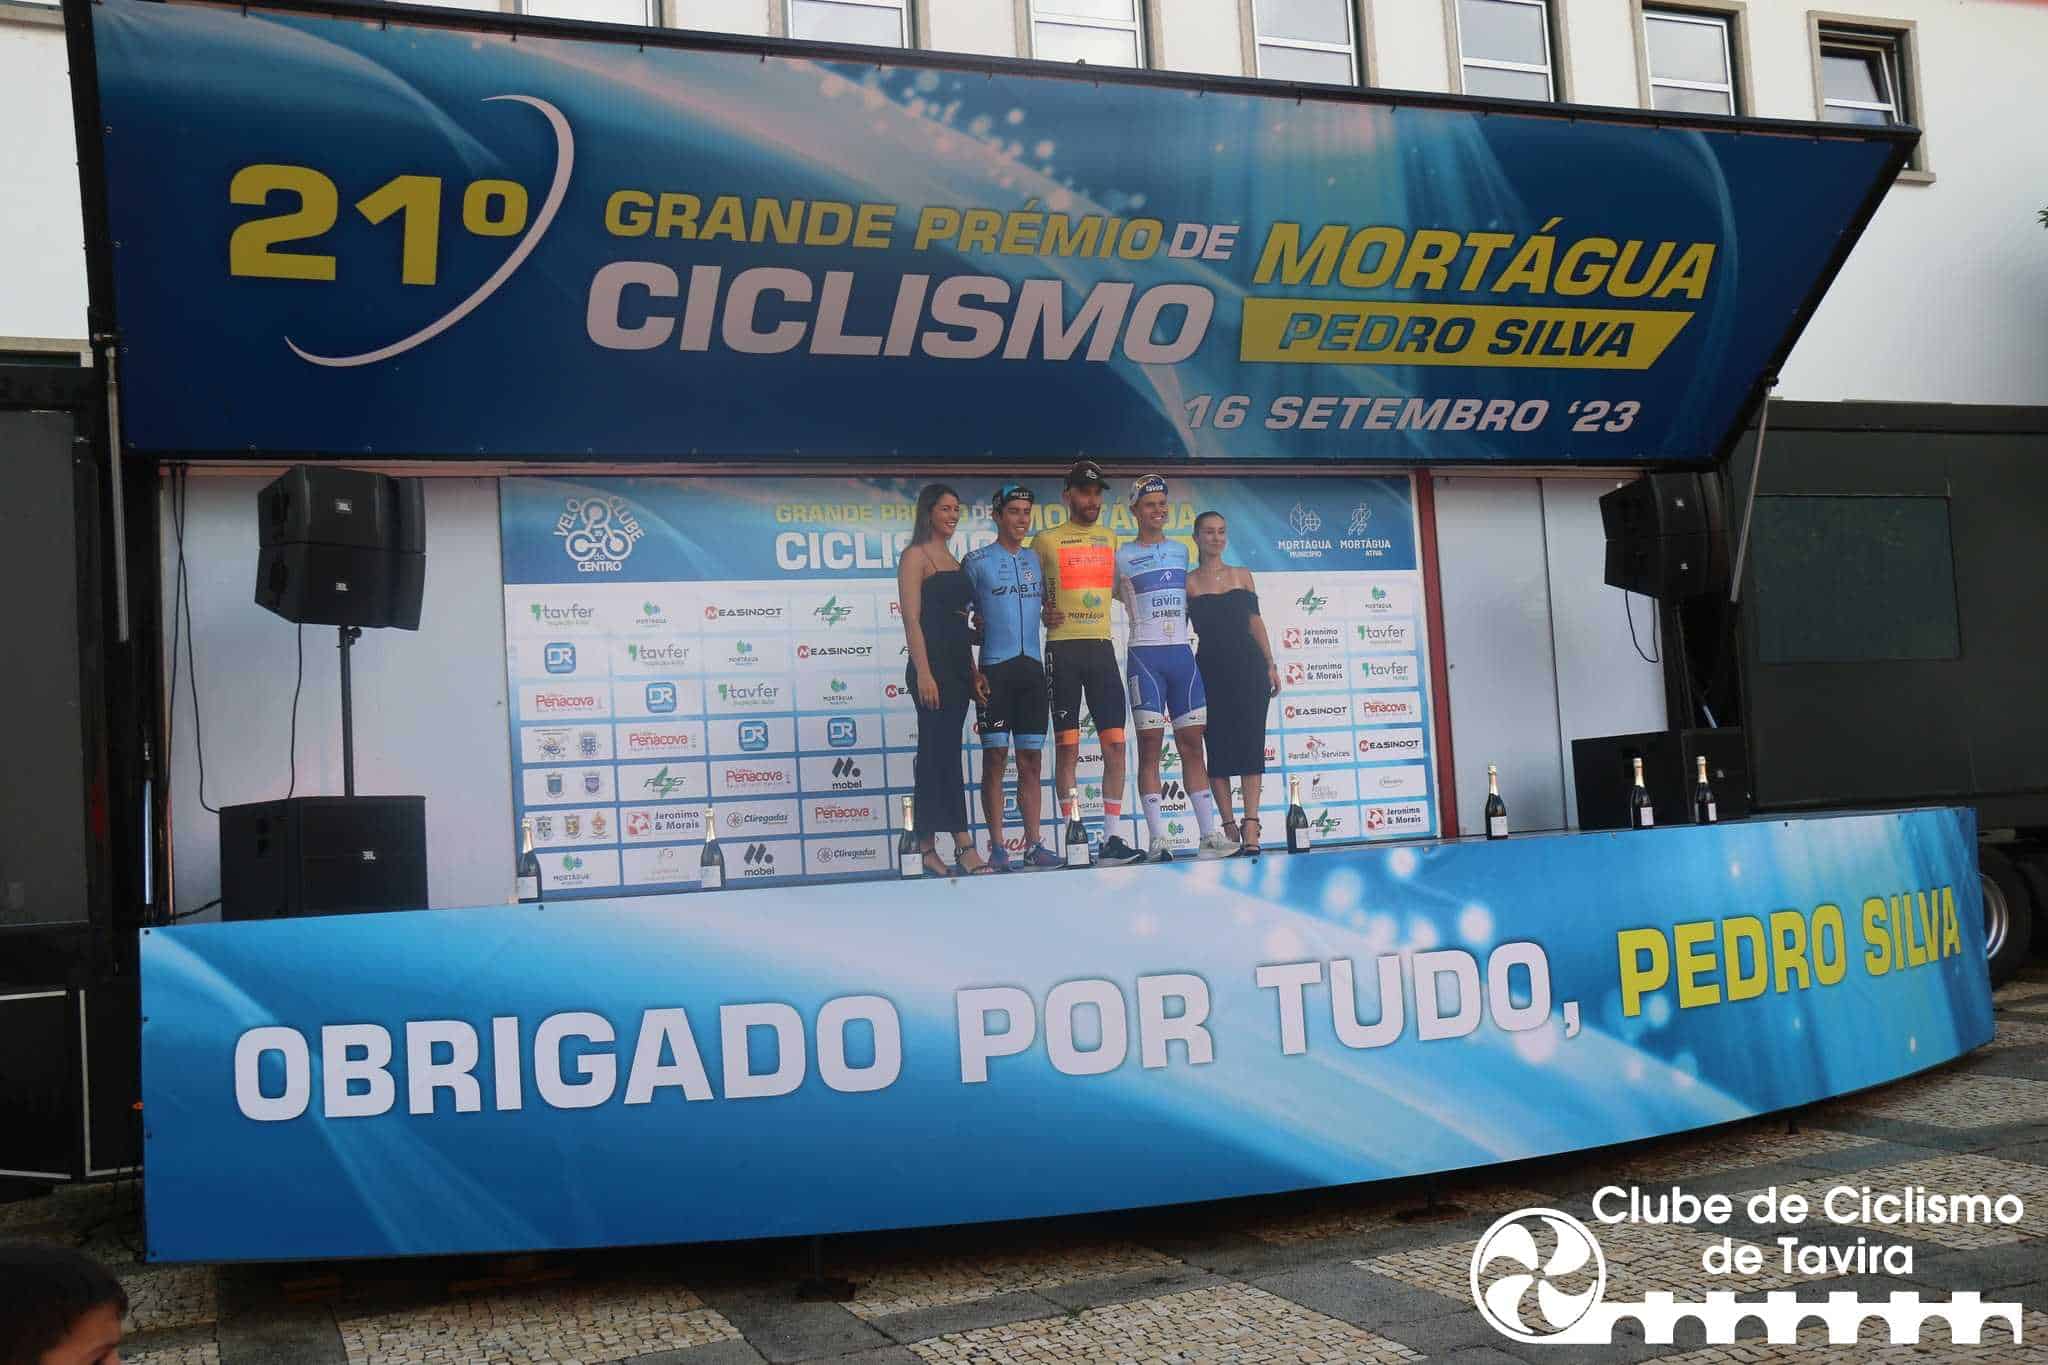 Clube Ciclismo de Tavira - 21º GP de Ciclismo de Mortágua - Pedro Silva11